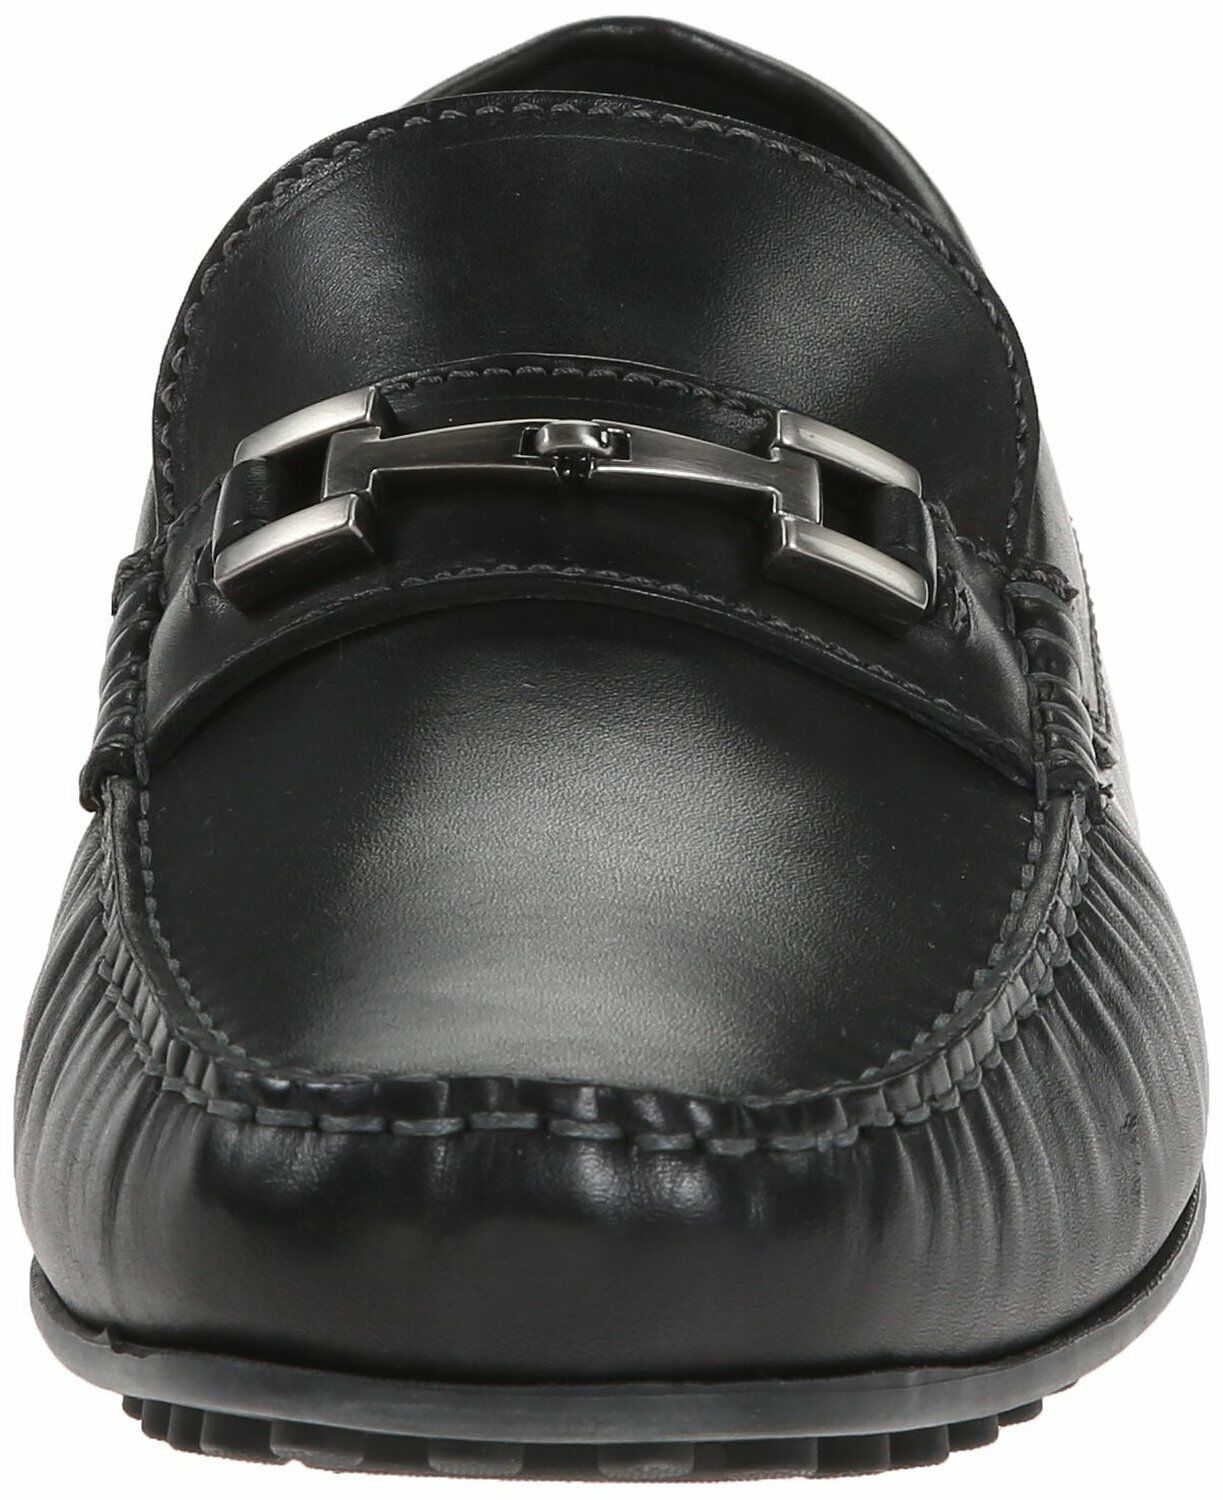 ECCO Men's 580414 Hybrid Black Leather Moccasin Slip-On Loafer